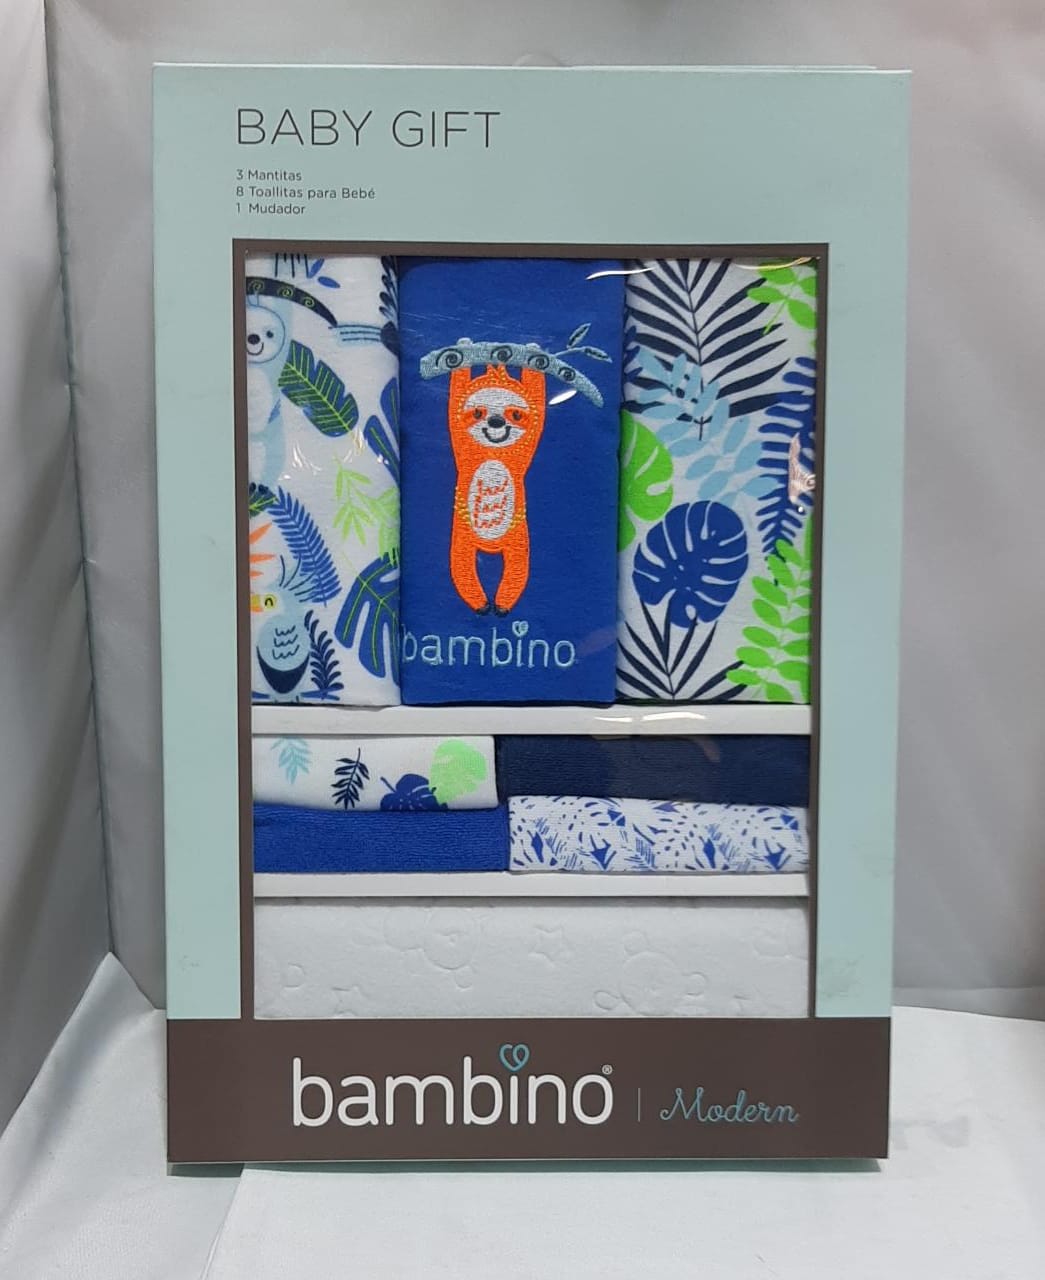 Pack de 4 cajas de regalo niño bambino baby gift